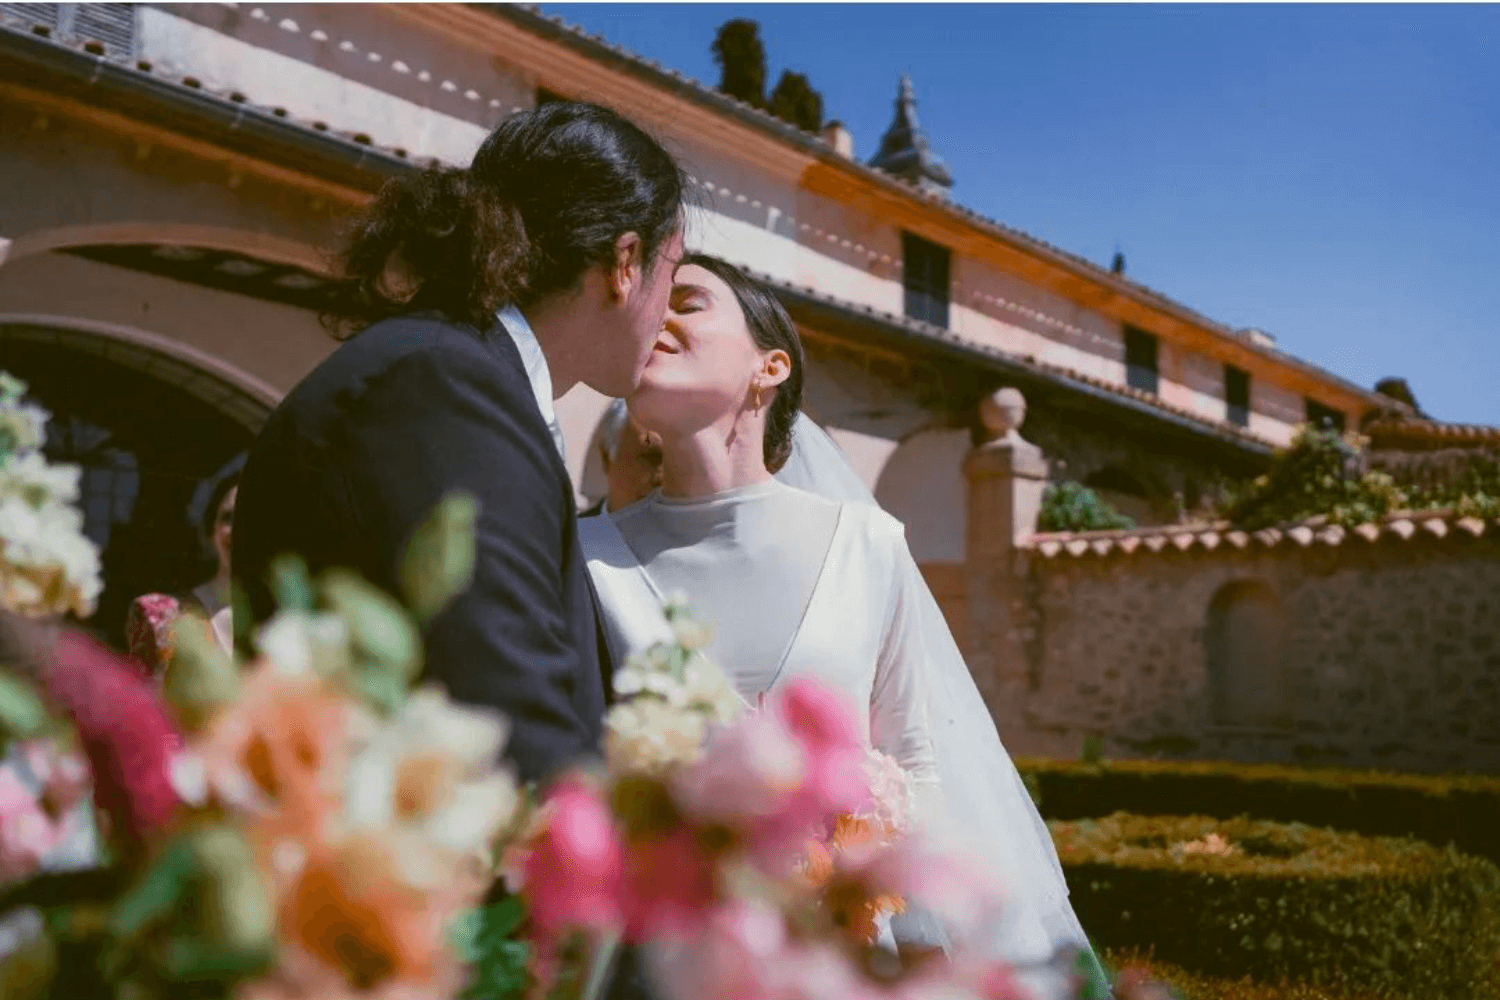 Un couple de jeunes mariés s'embrassant. Au premier plan, on aperçoit un bouquet de fleurs aux tons roses et orangés et, au fond, une grande demeure provençale.